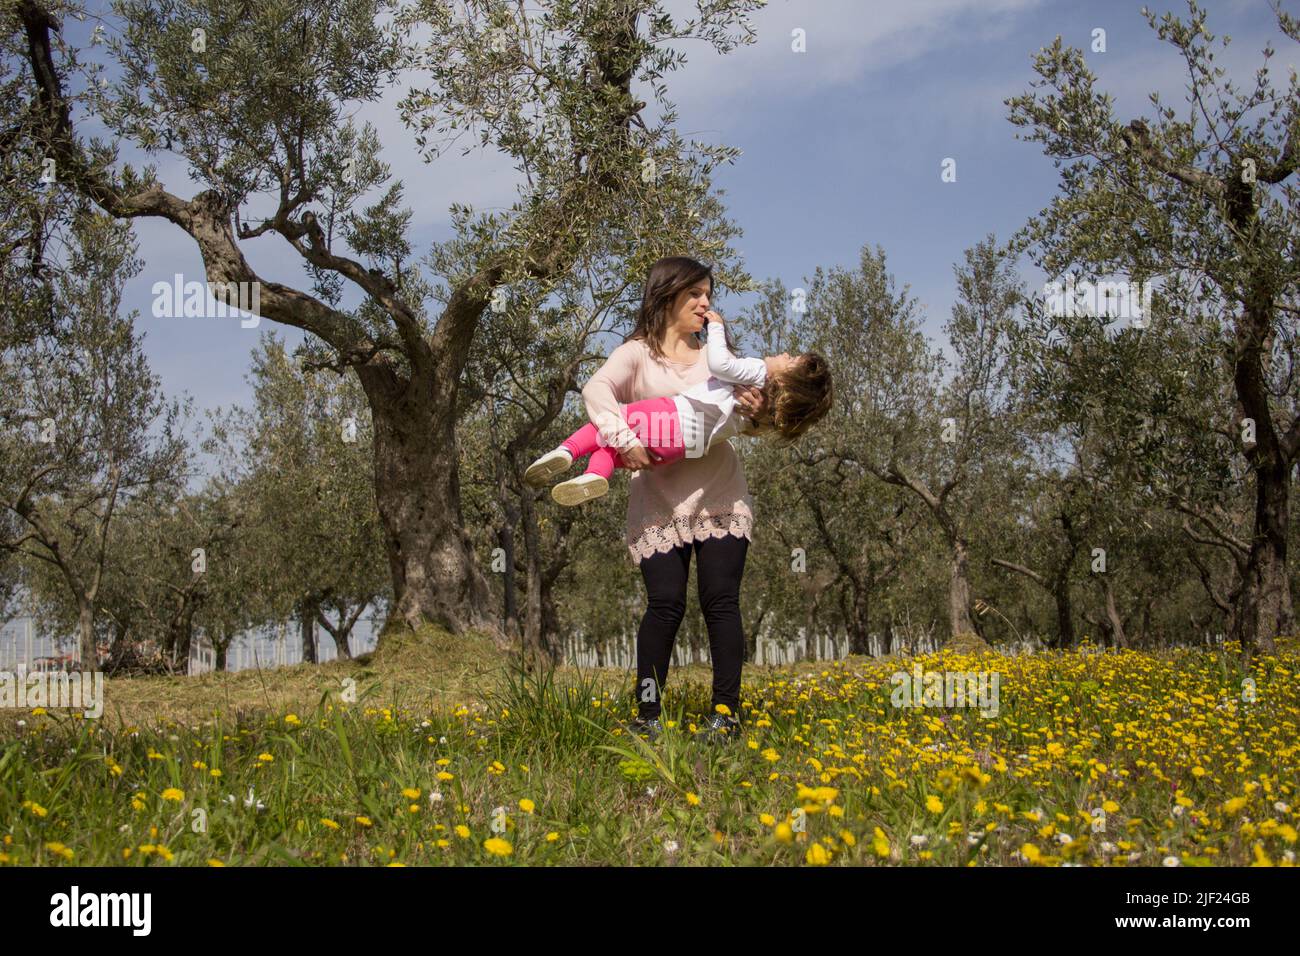 Image d'une jeune mère tenant sa fille dans les bras pendant qu'elle joue dans un champ fleuri lors d'un voyage en Toscane Italie Banque D'Images